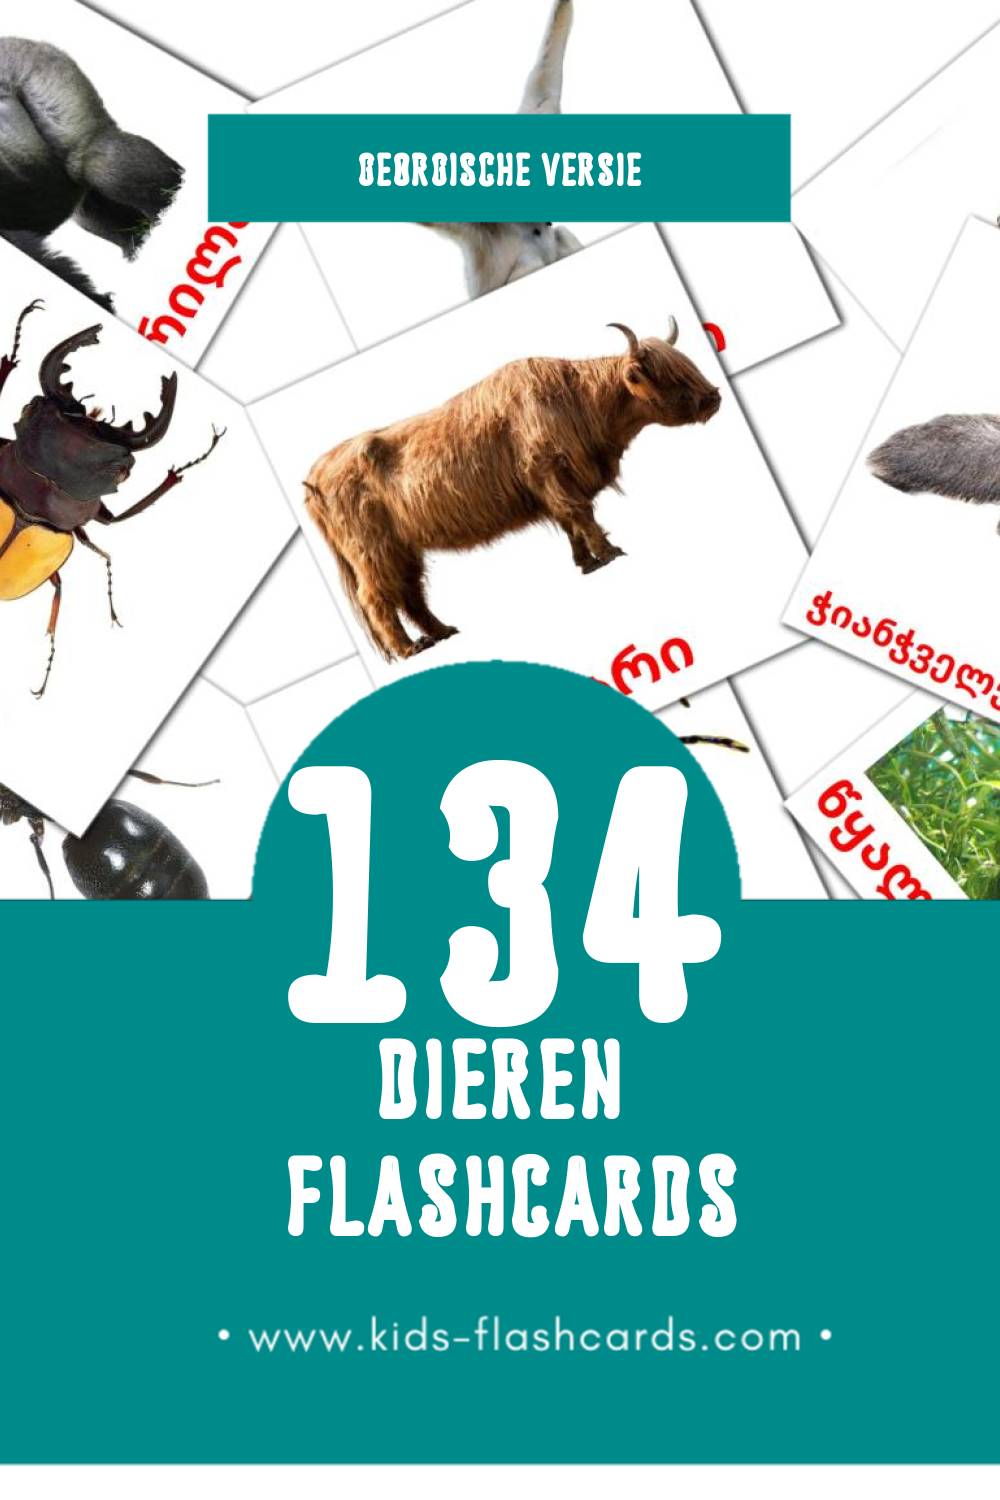 Visuele ცხოველები Flashcards voor Kleuters (134 kaarten in het Georgisch)